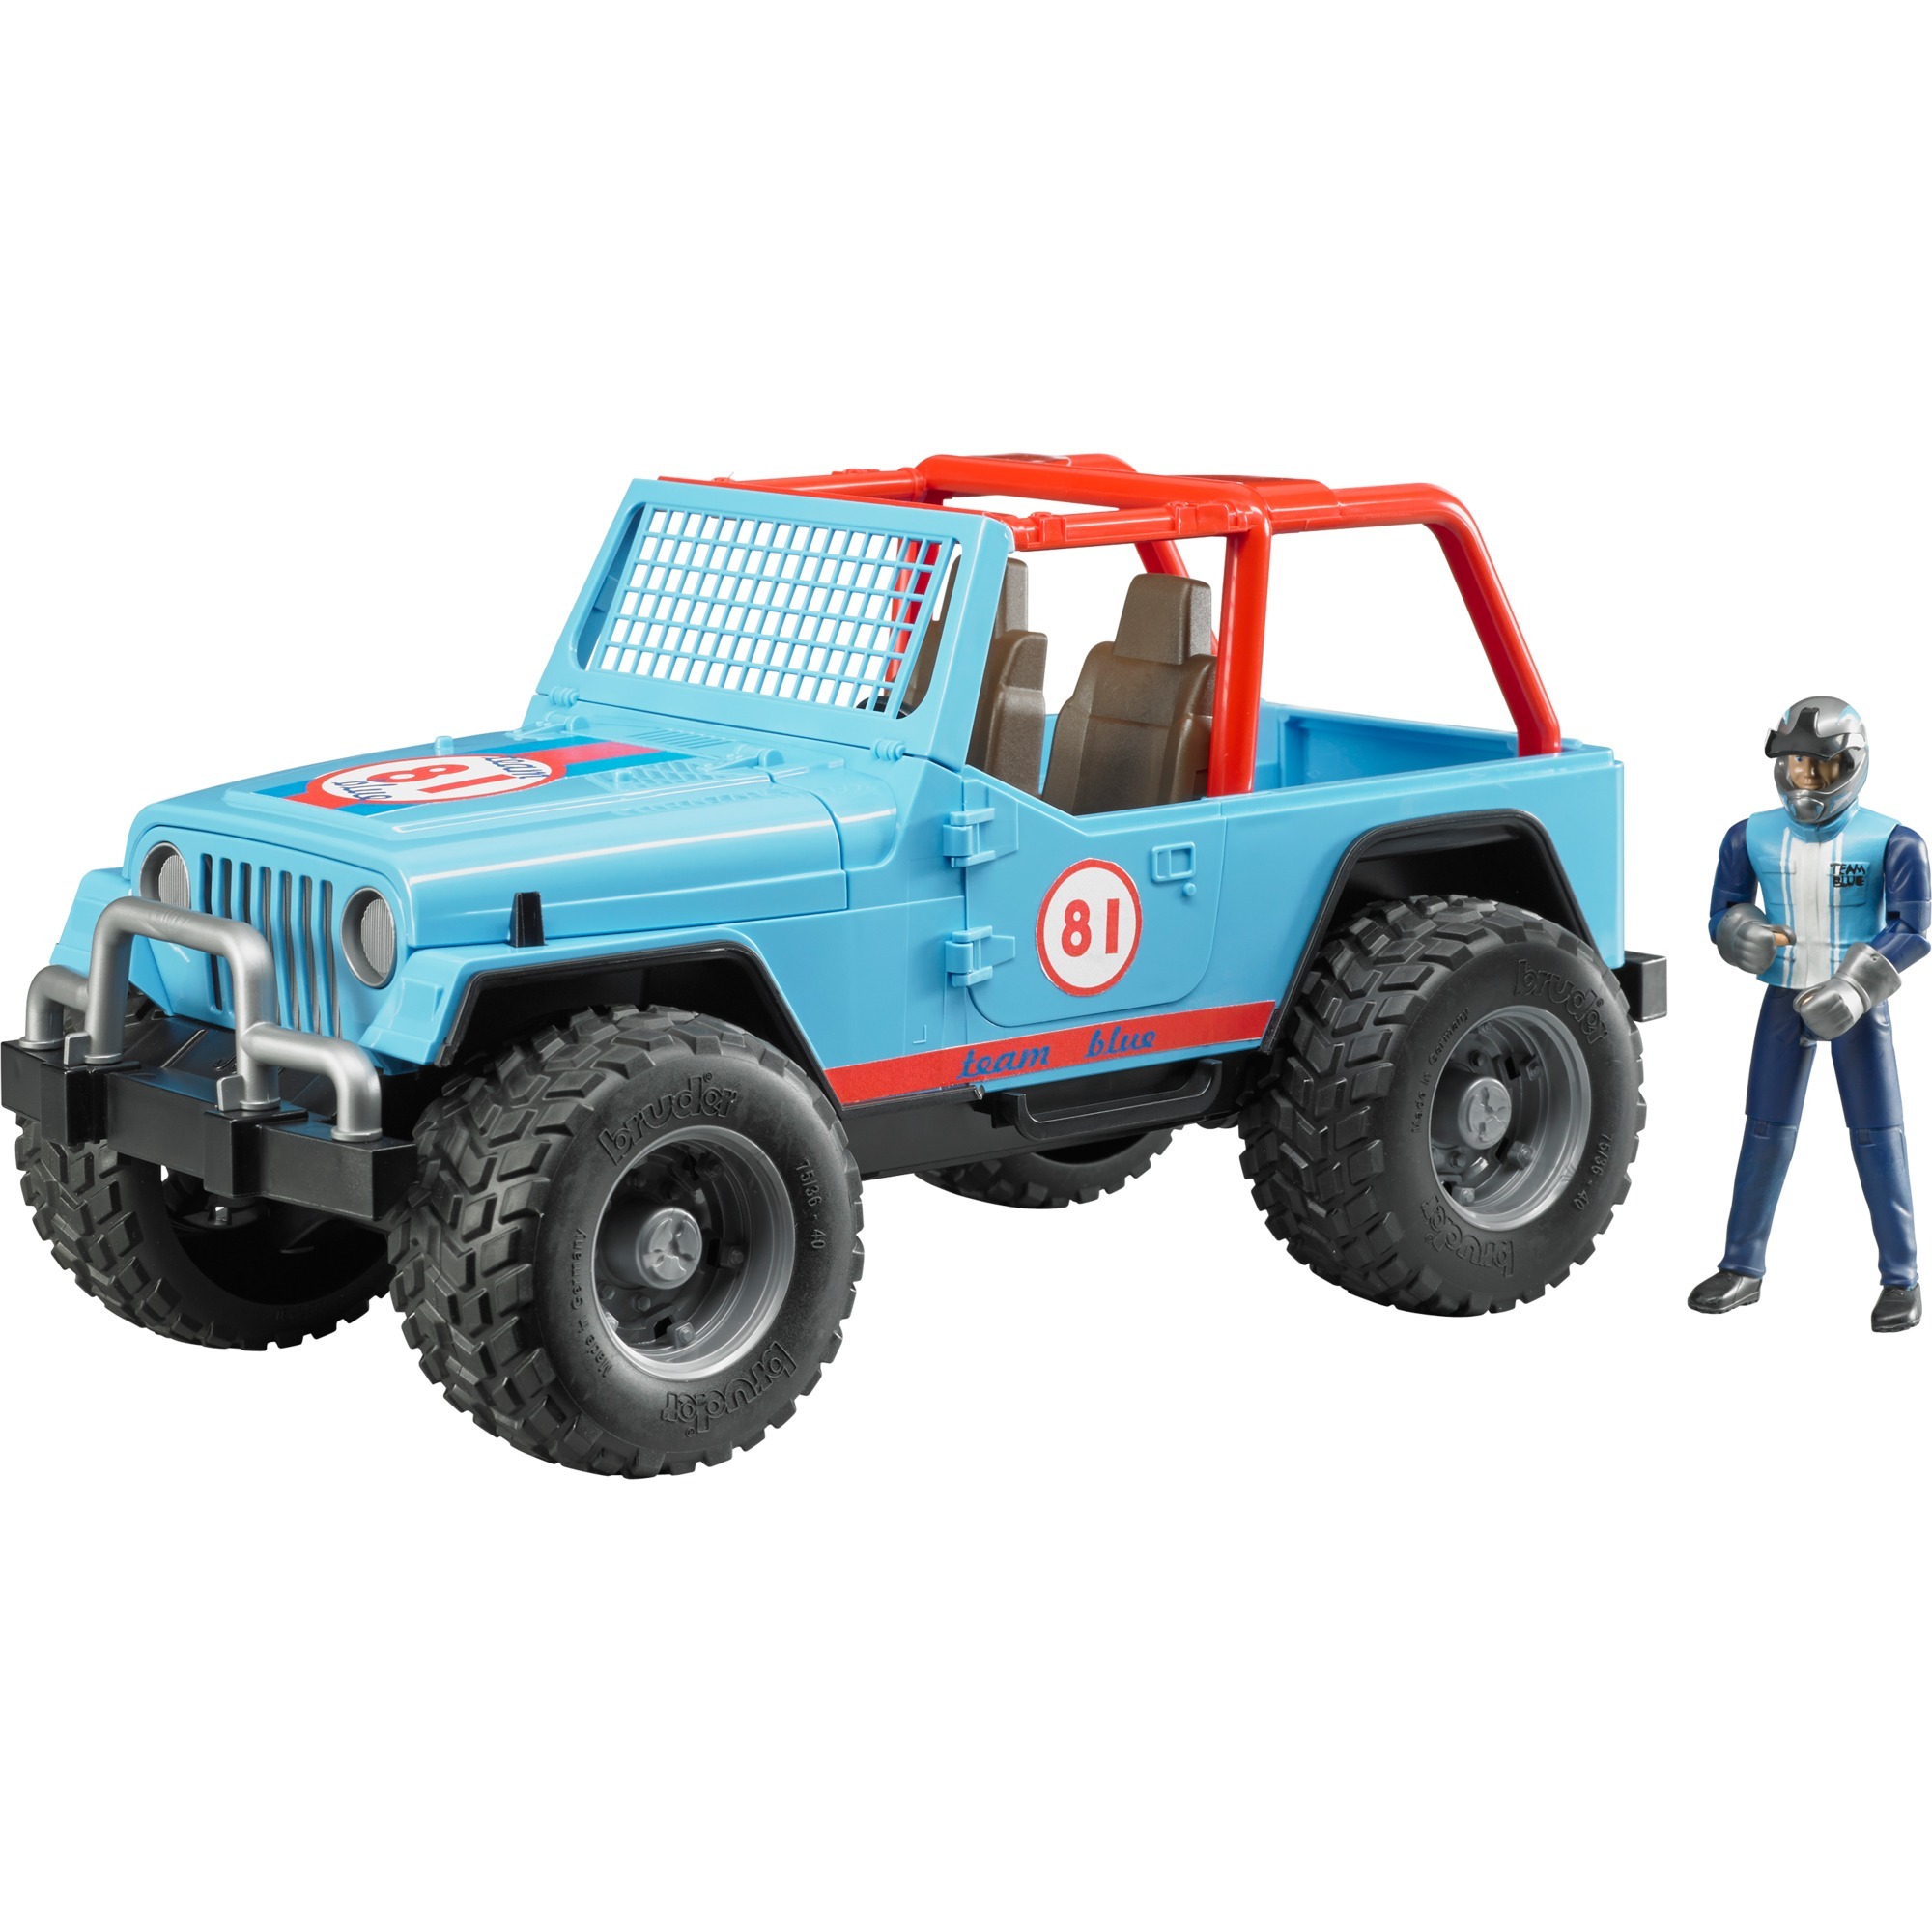 Image of Alternate - Jeep Cross Country Racer mit Rennfahrer, Modellfahrzeug online einkaufen bei Alternate